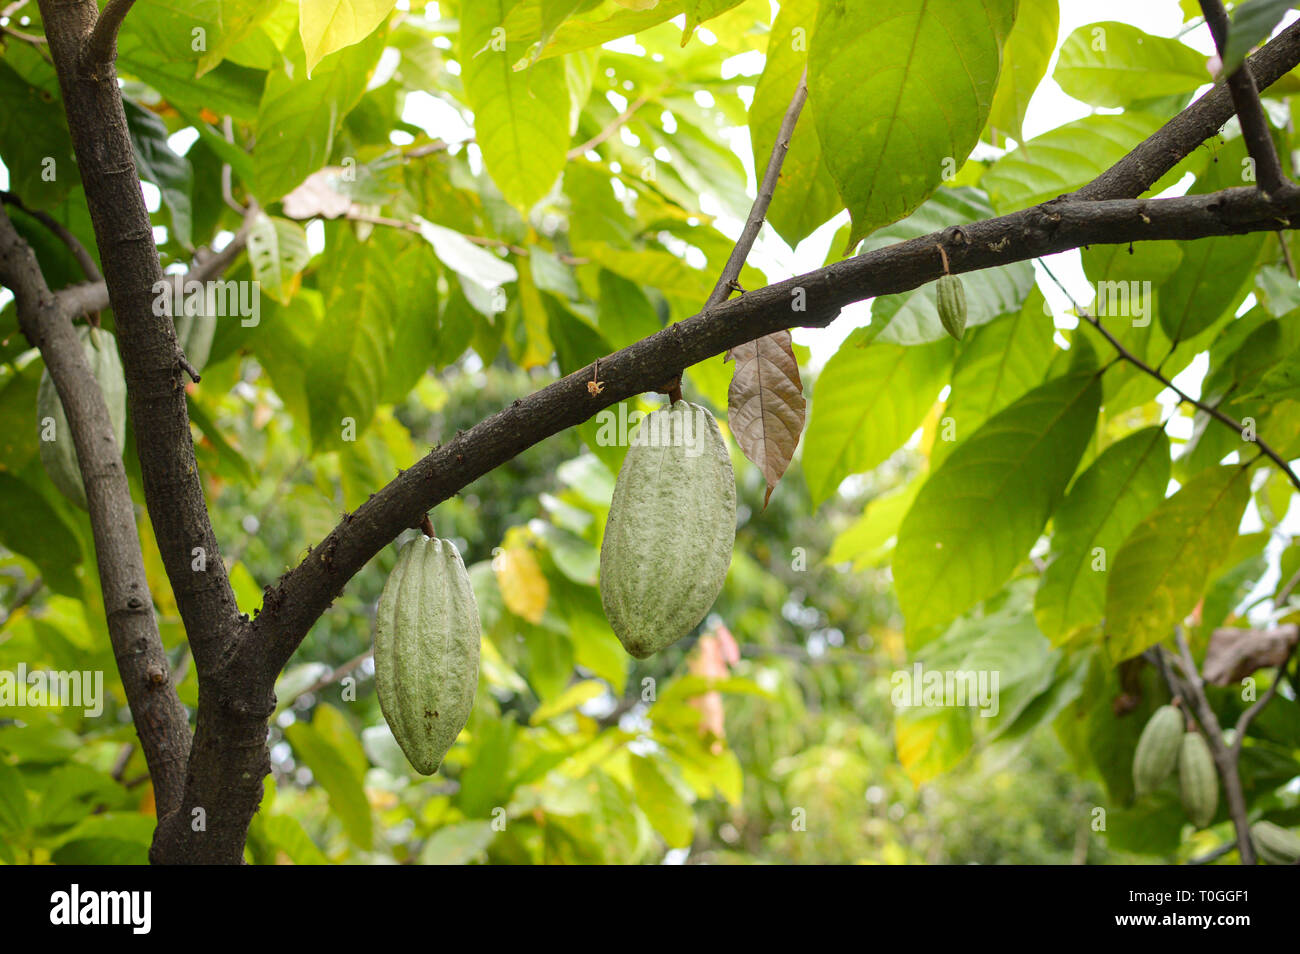 Fruits de cacao et des arbres dans les hautes terres de l'île Samosir au nord de Sumatra, Indonésie Banque D'Images